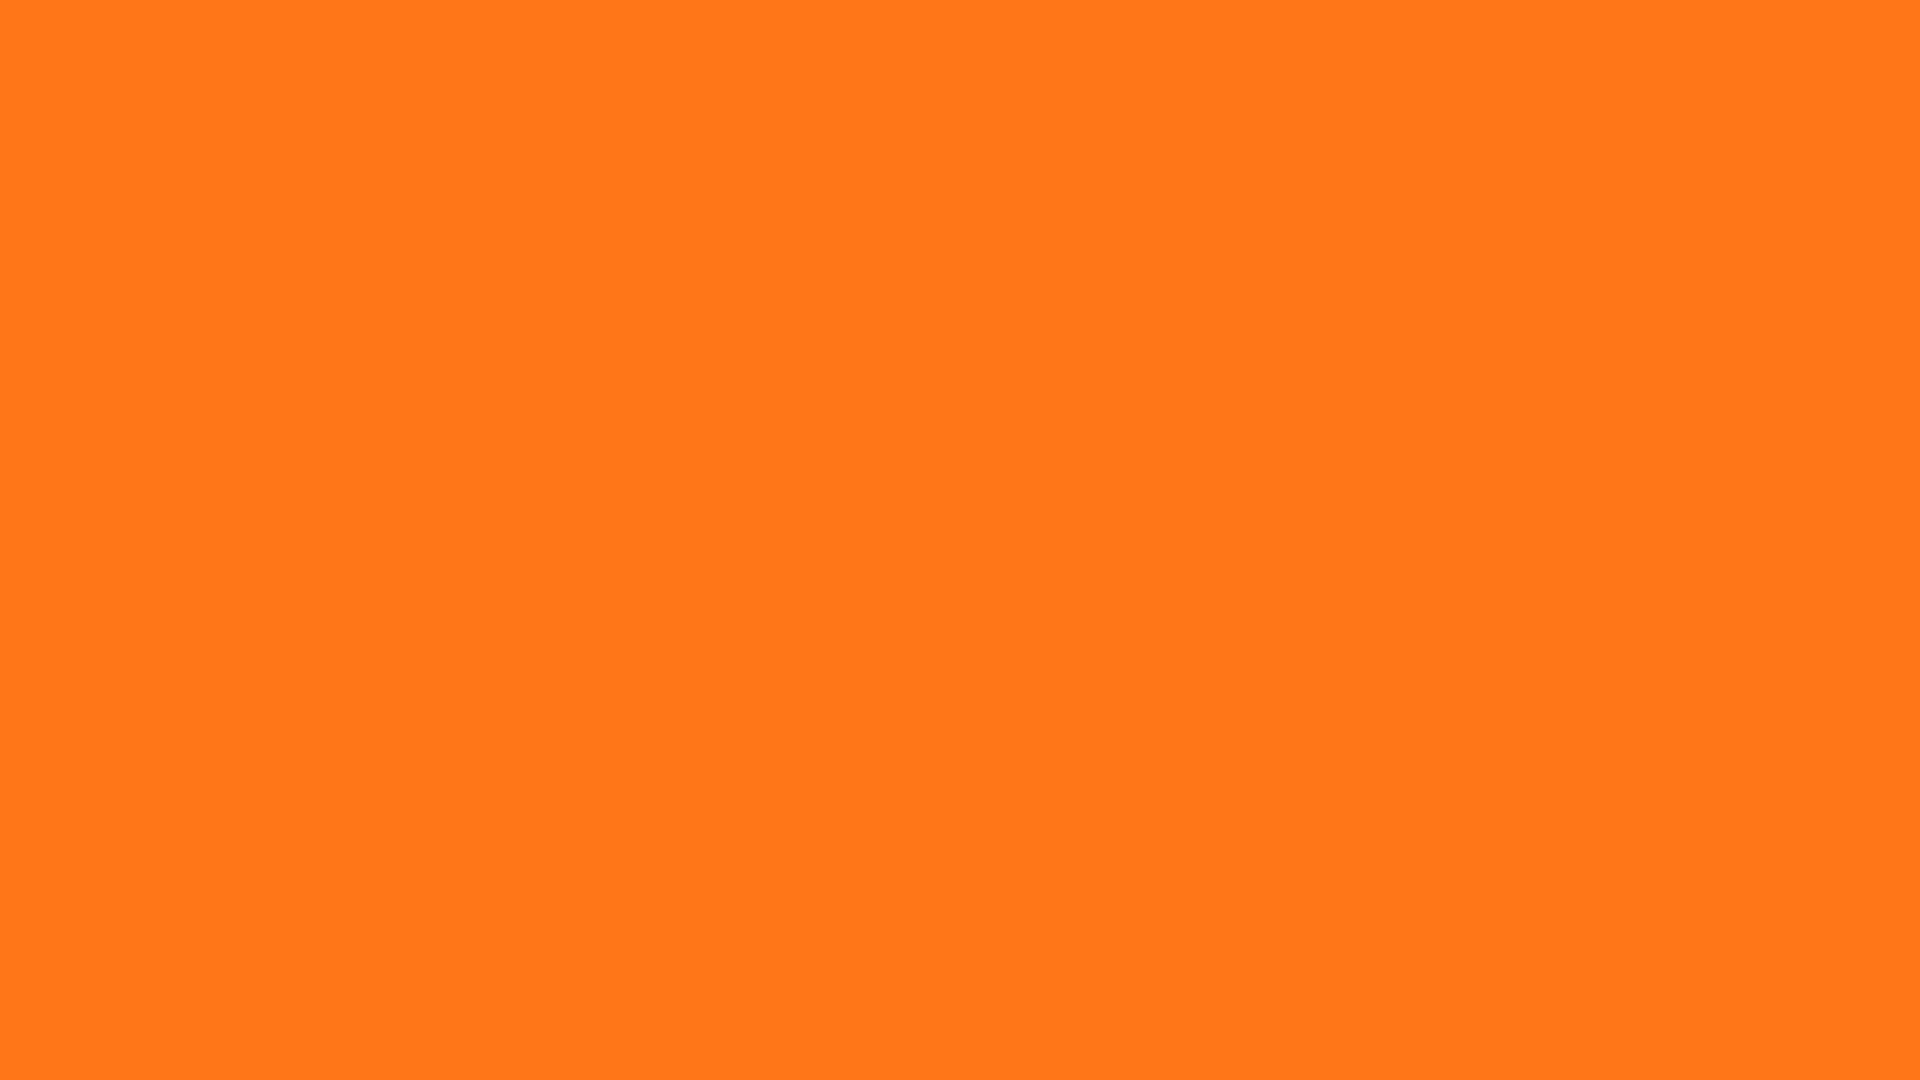 Sfondodi Colore Arancione Chiaro Uniforme.